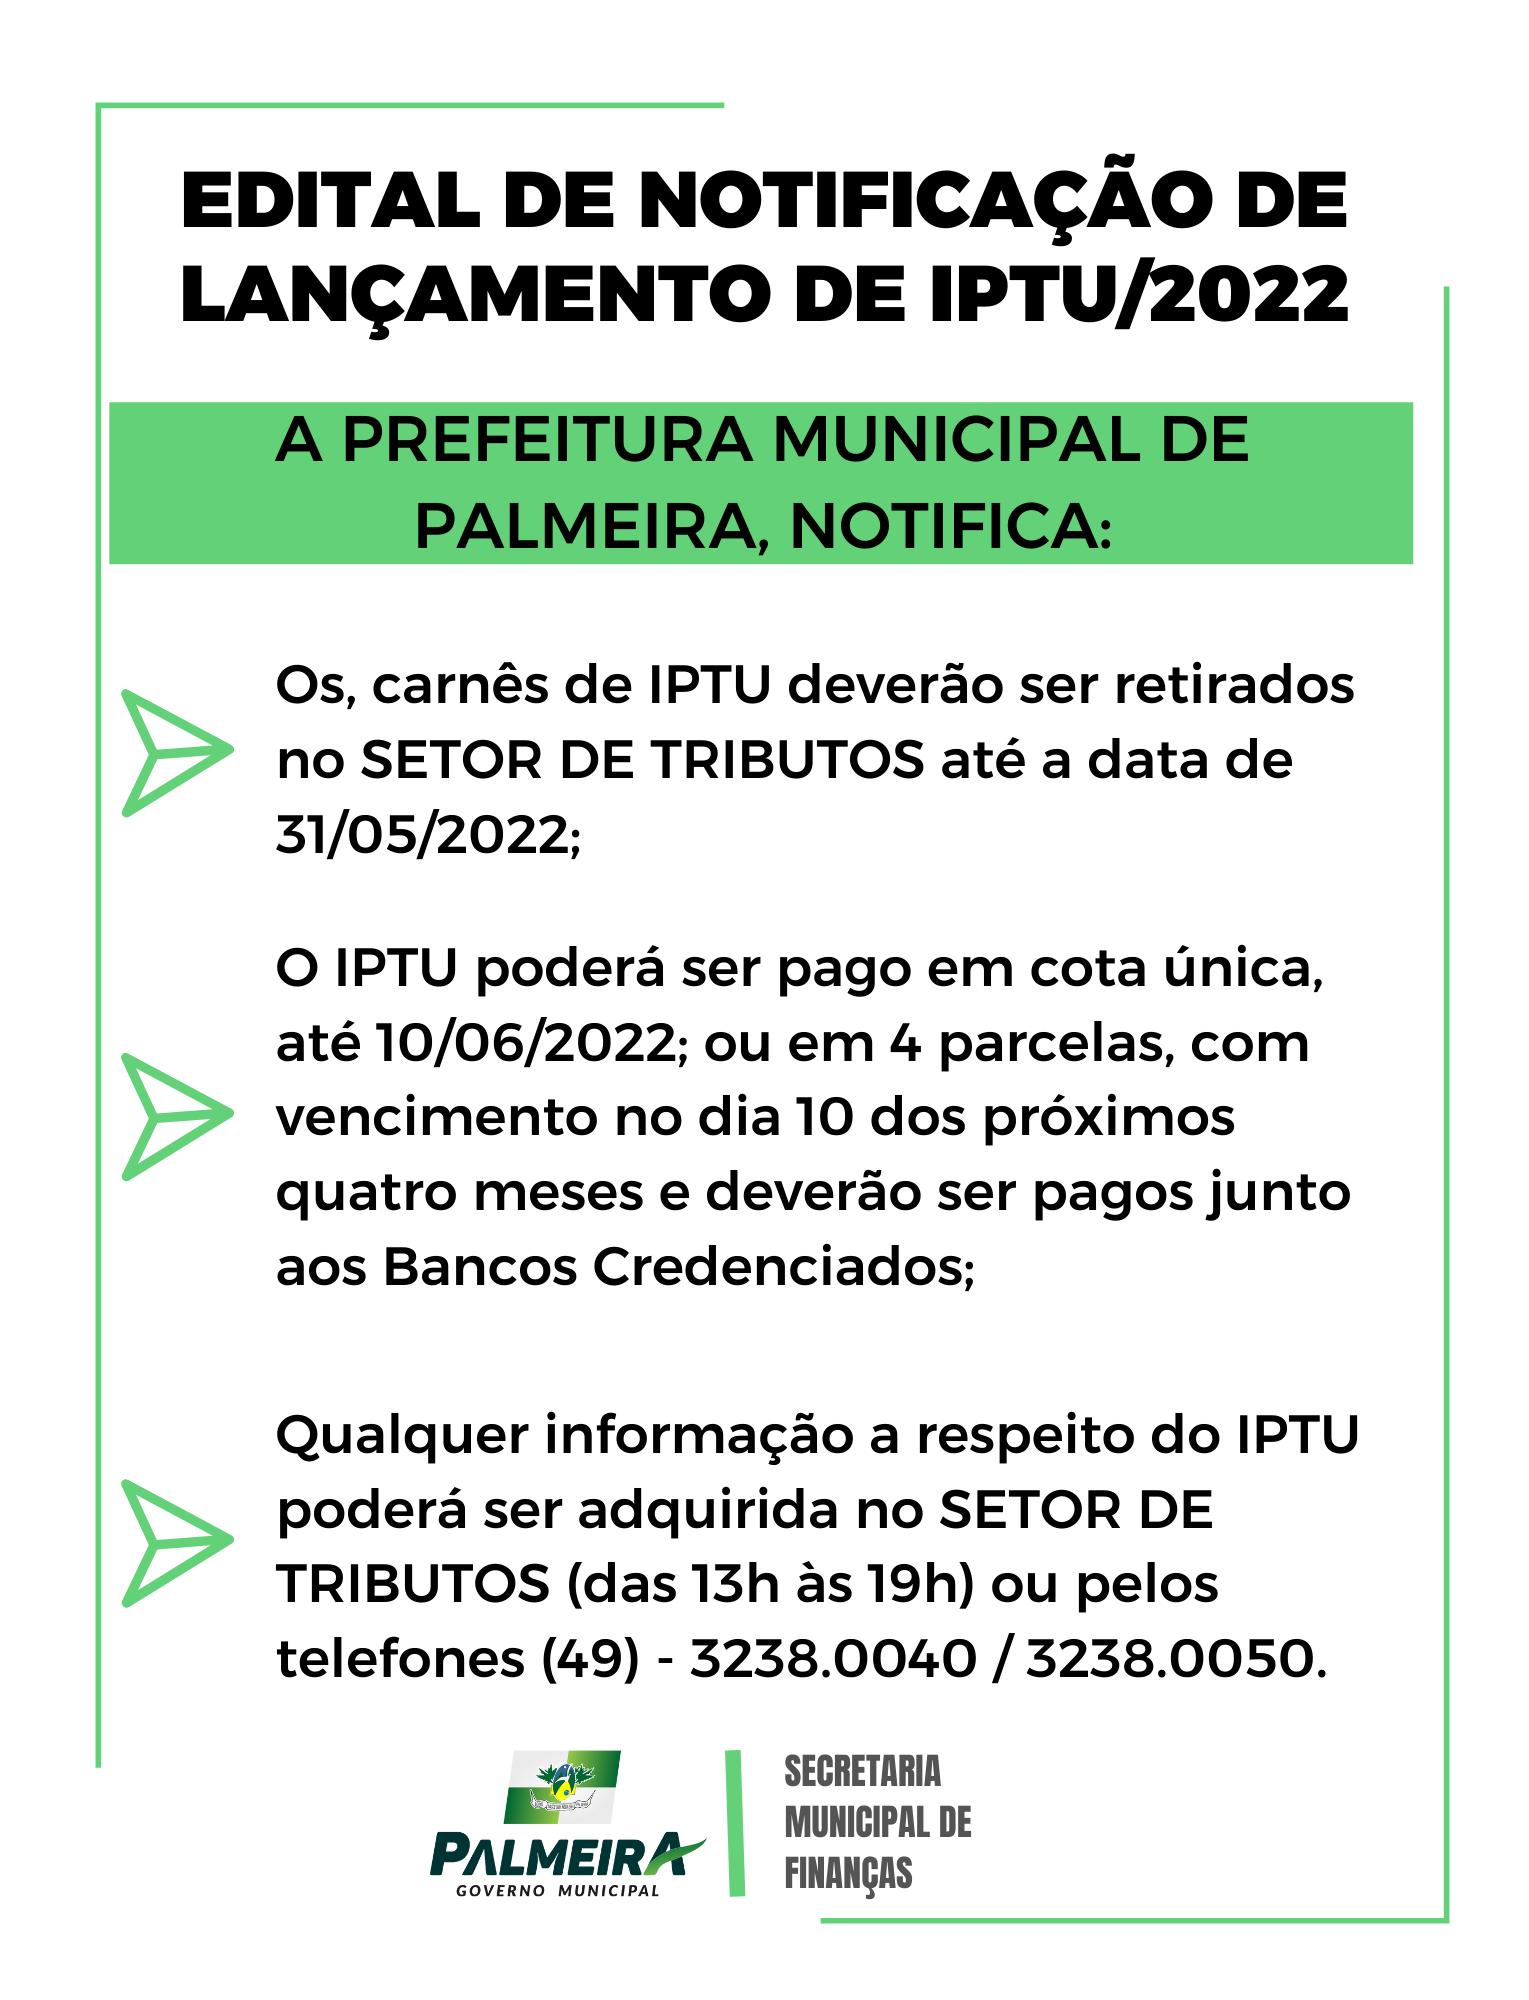 A PREFEITURA MUNICIPAL DE PALMEIRA, DIVULGA O EDITAL DE NOTIFICAÇÕES DE LANÇAMENTO DE IPTU/2022